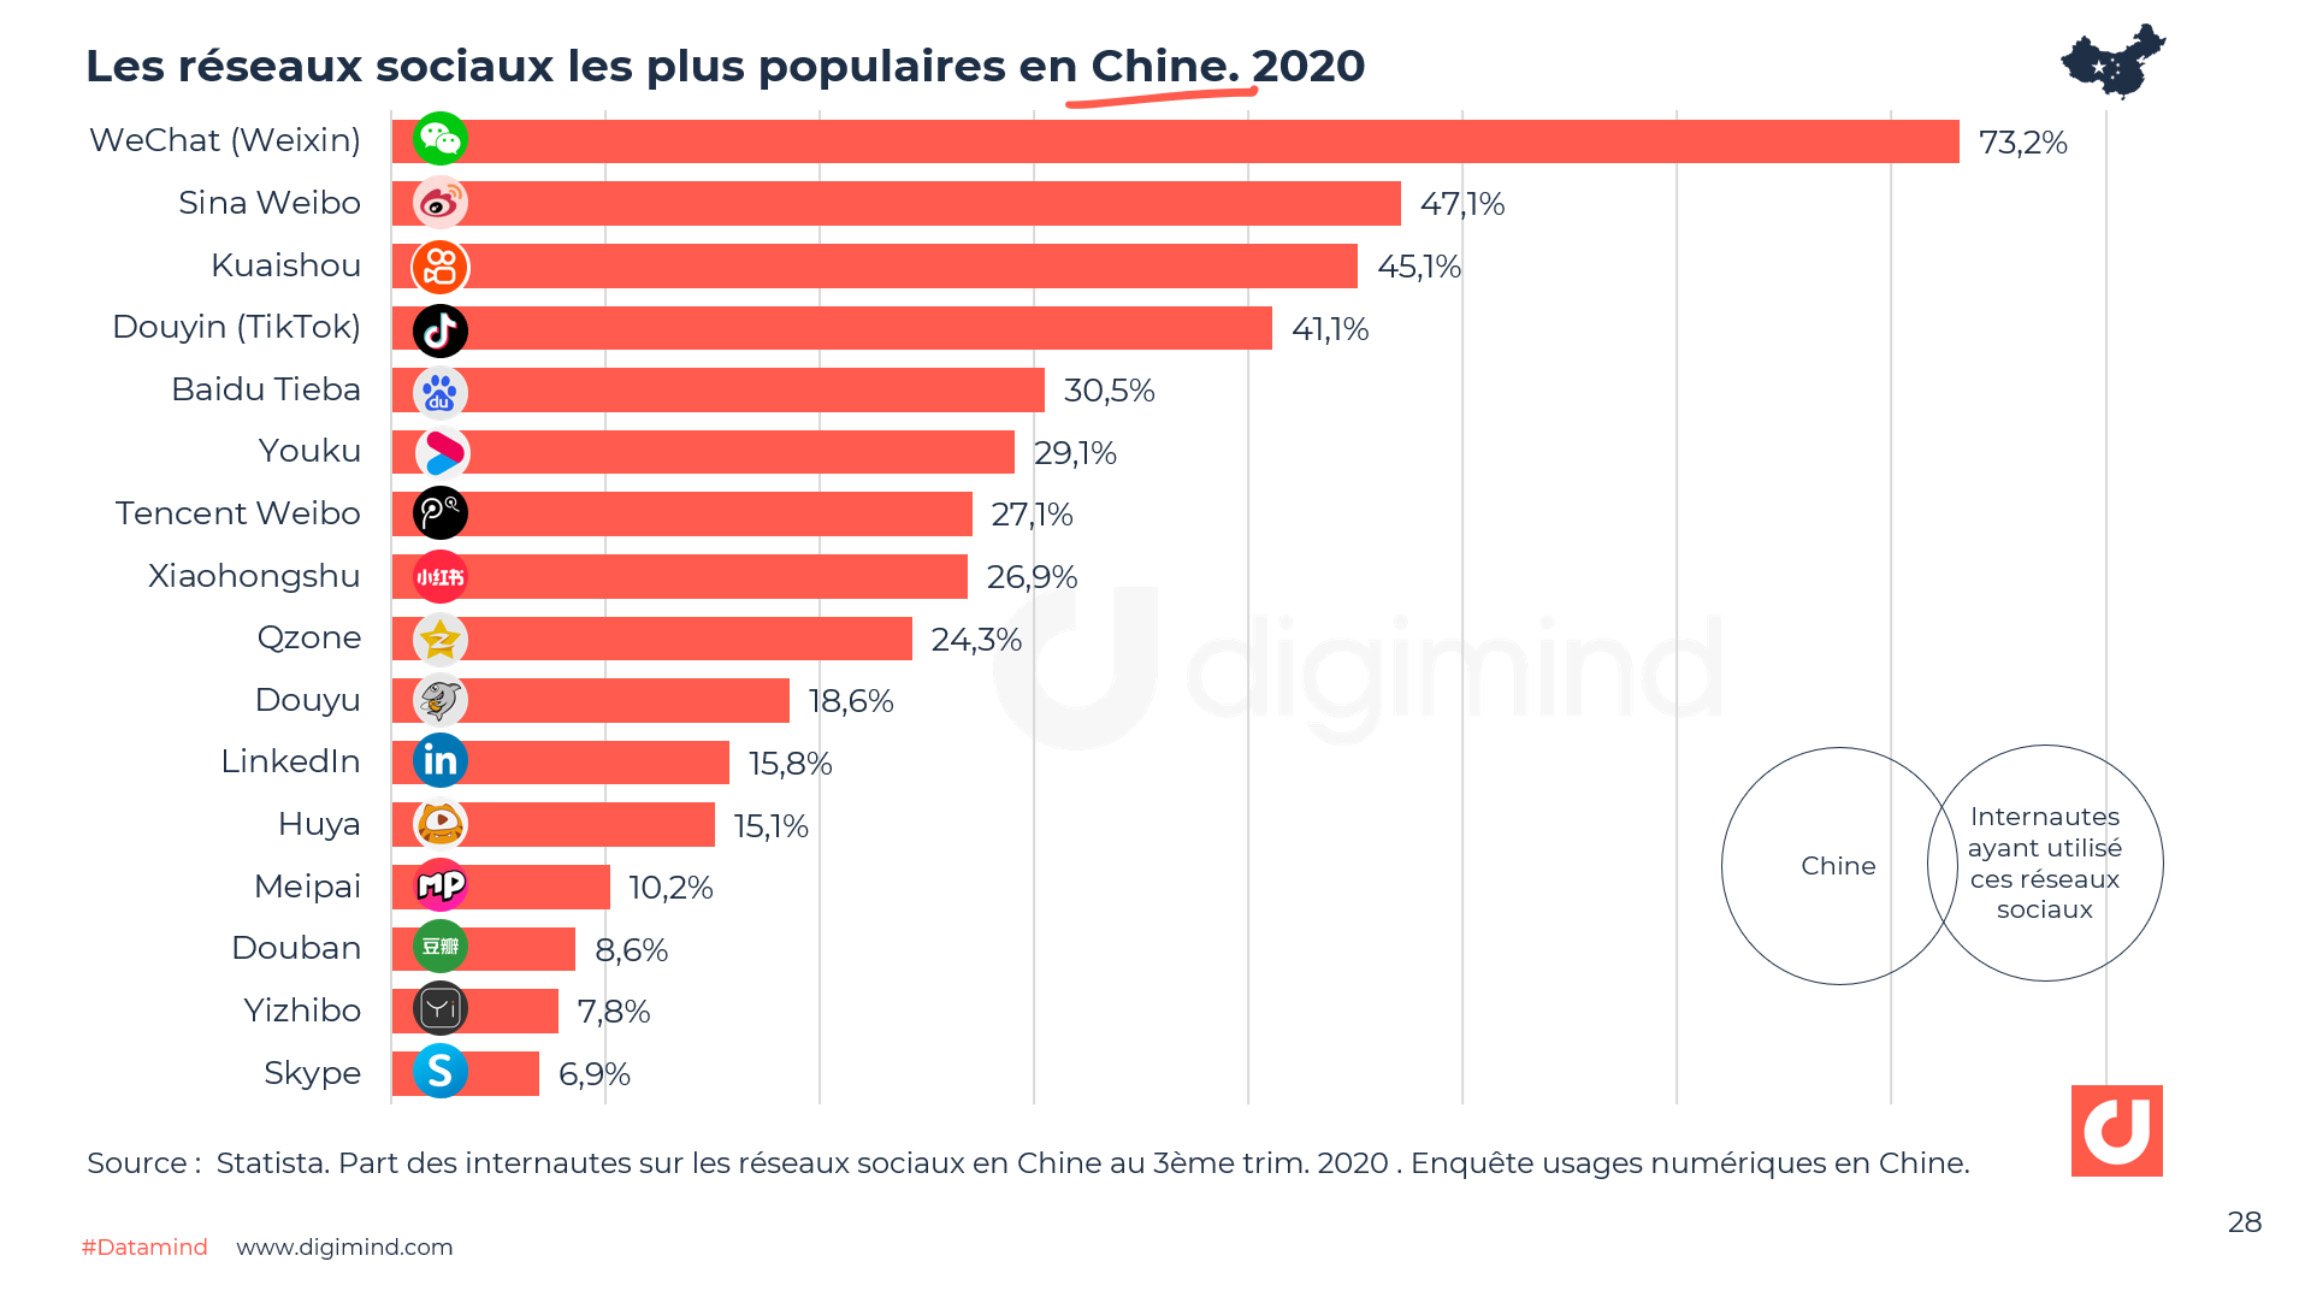 Les médias sociaux les plus populaires en Chine